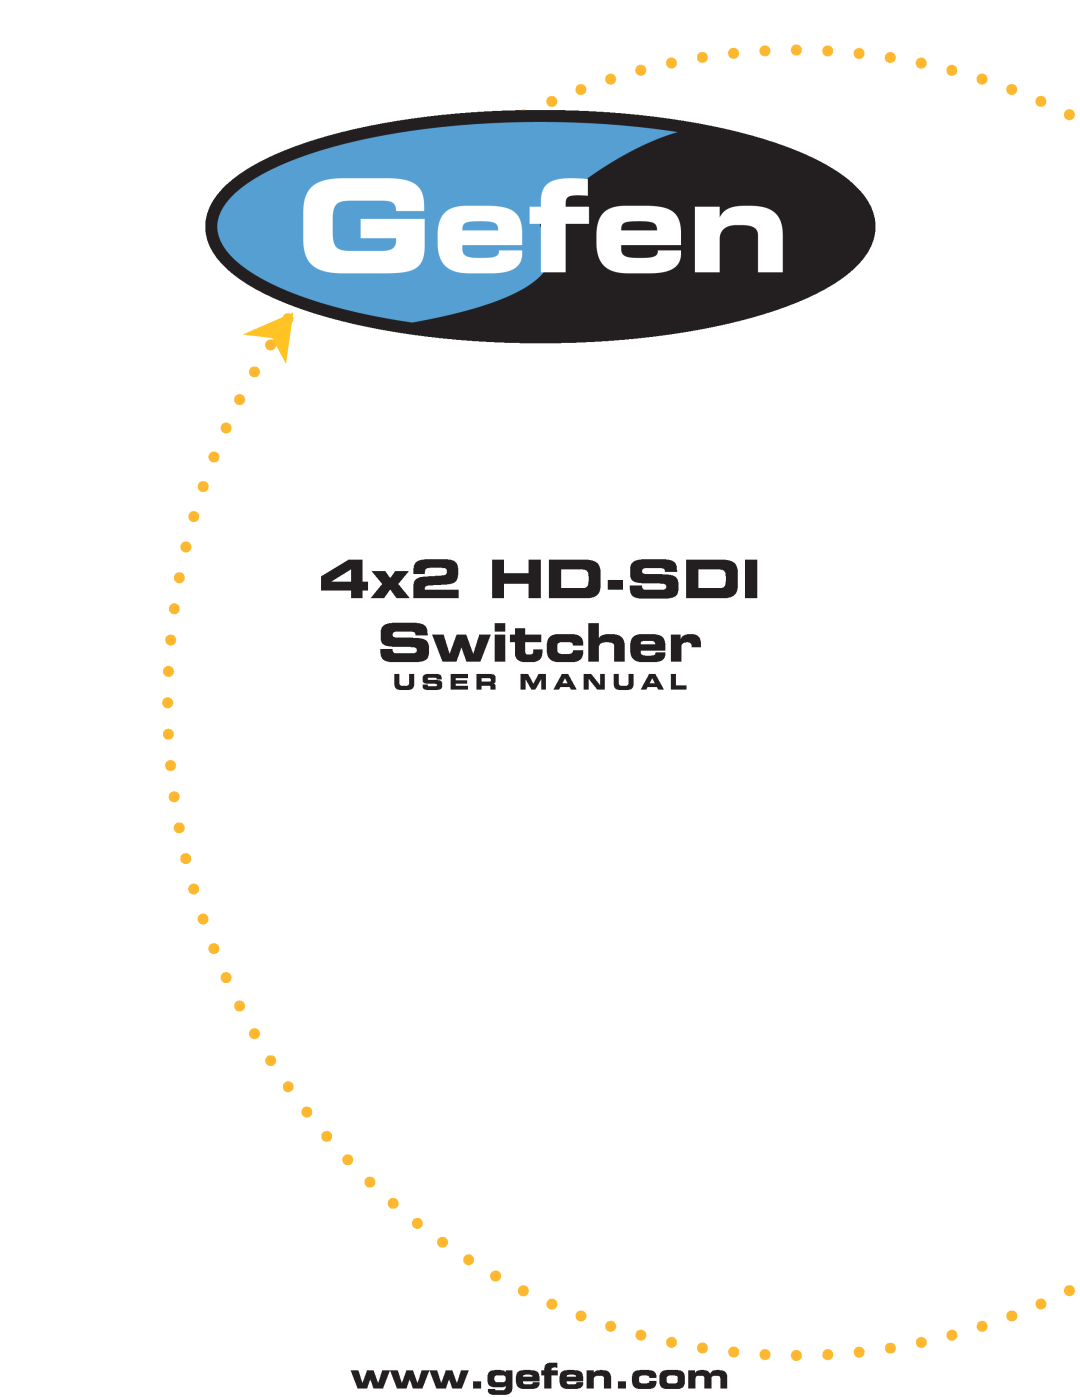 Gefen user manual U S E R M A N U A L, 4x2 HD-SDI Switcher 